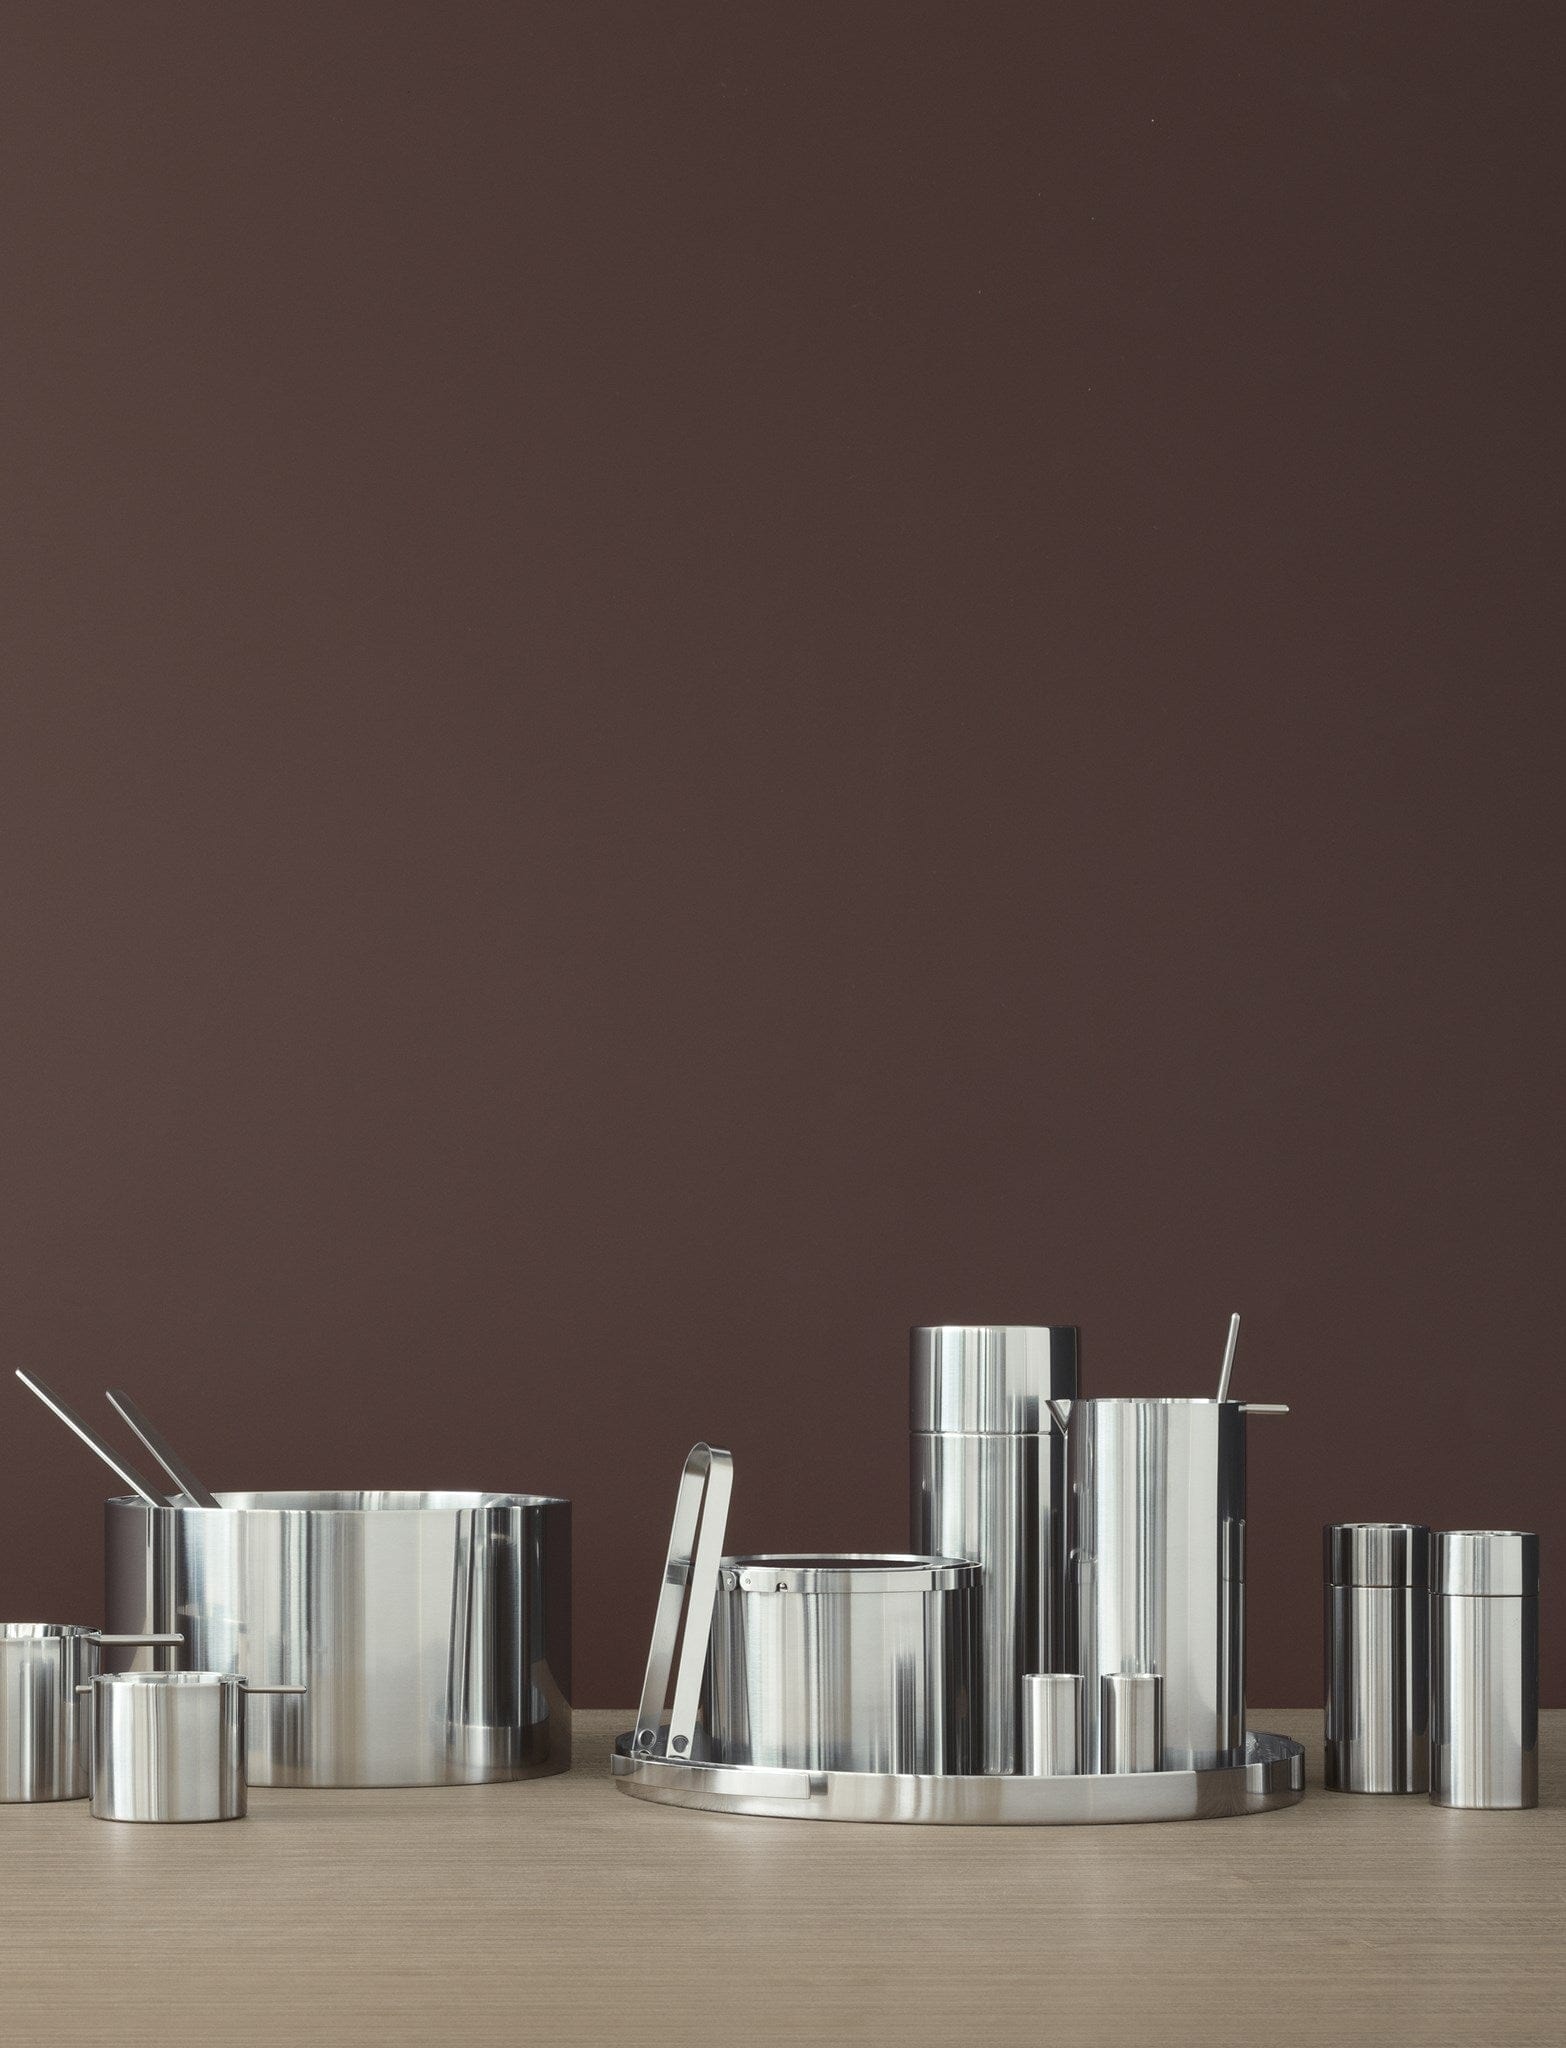 Stelton Arne Jacobsen Salt/peber ryster